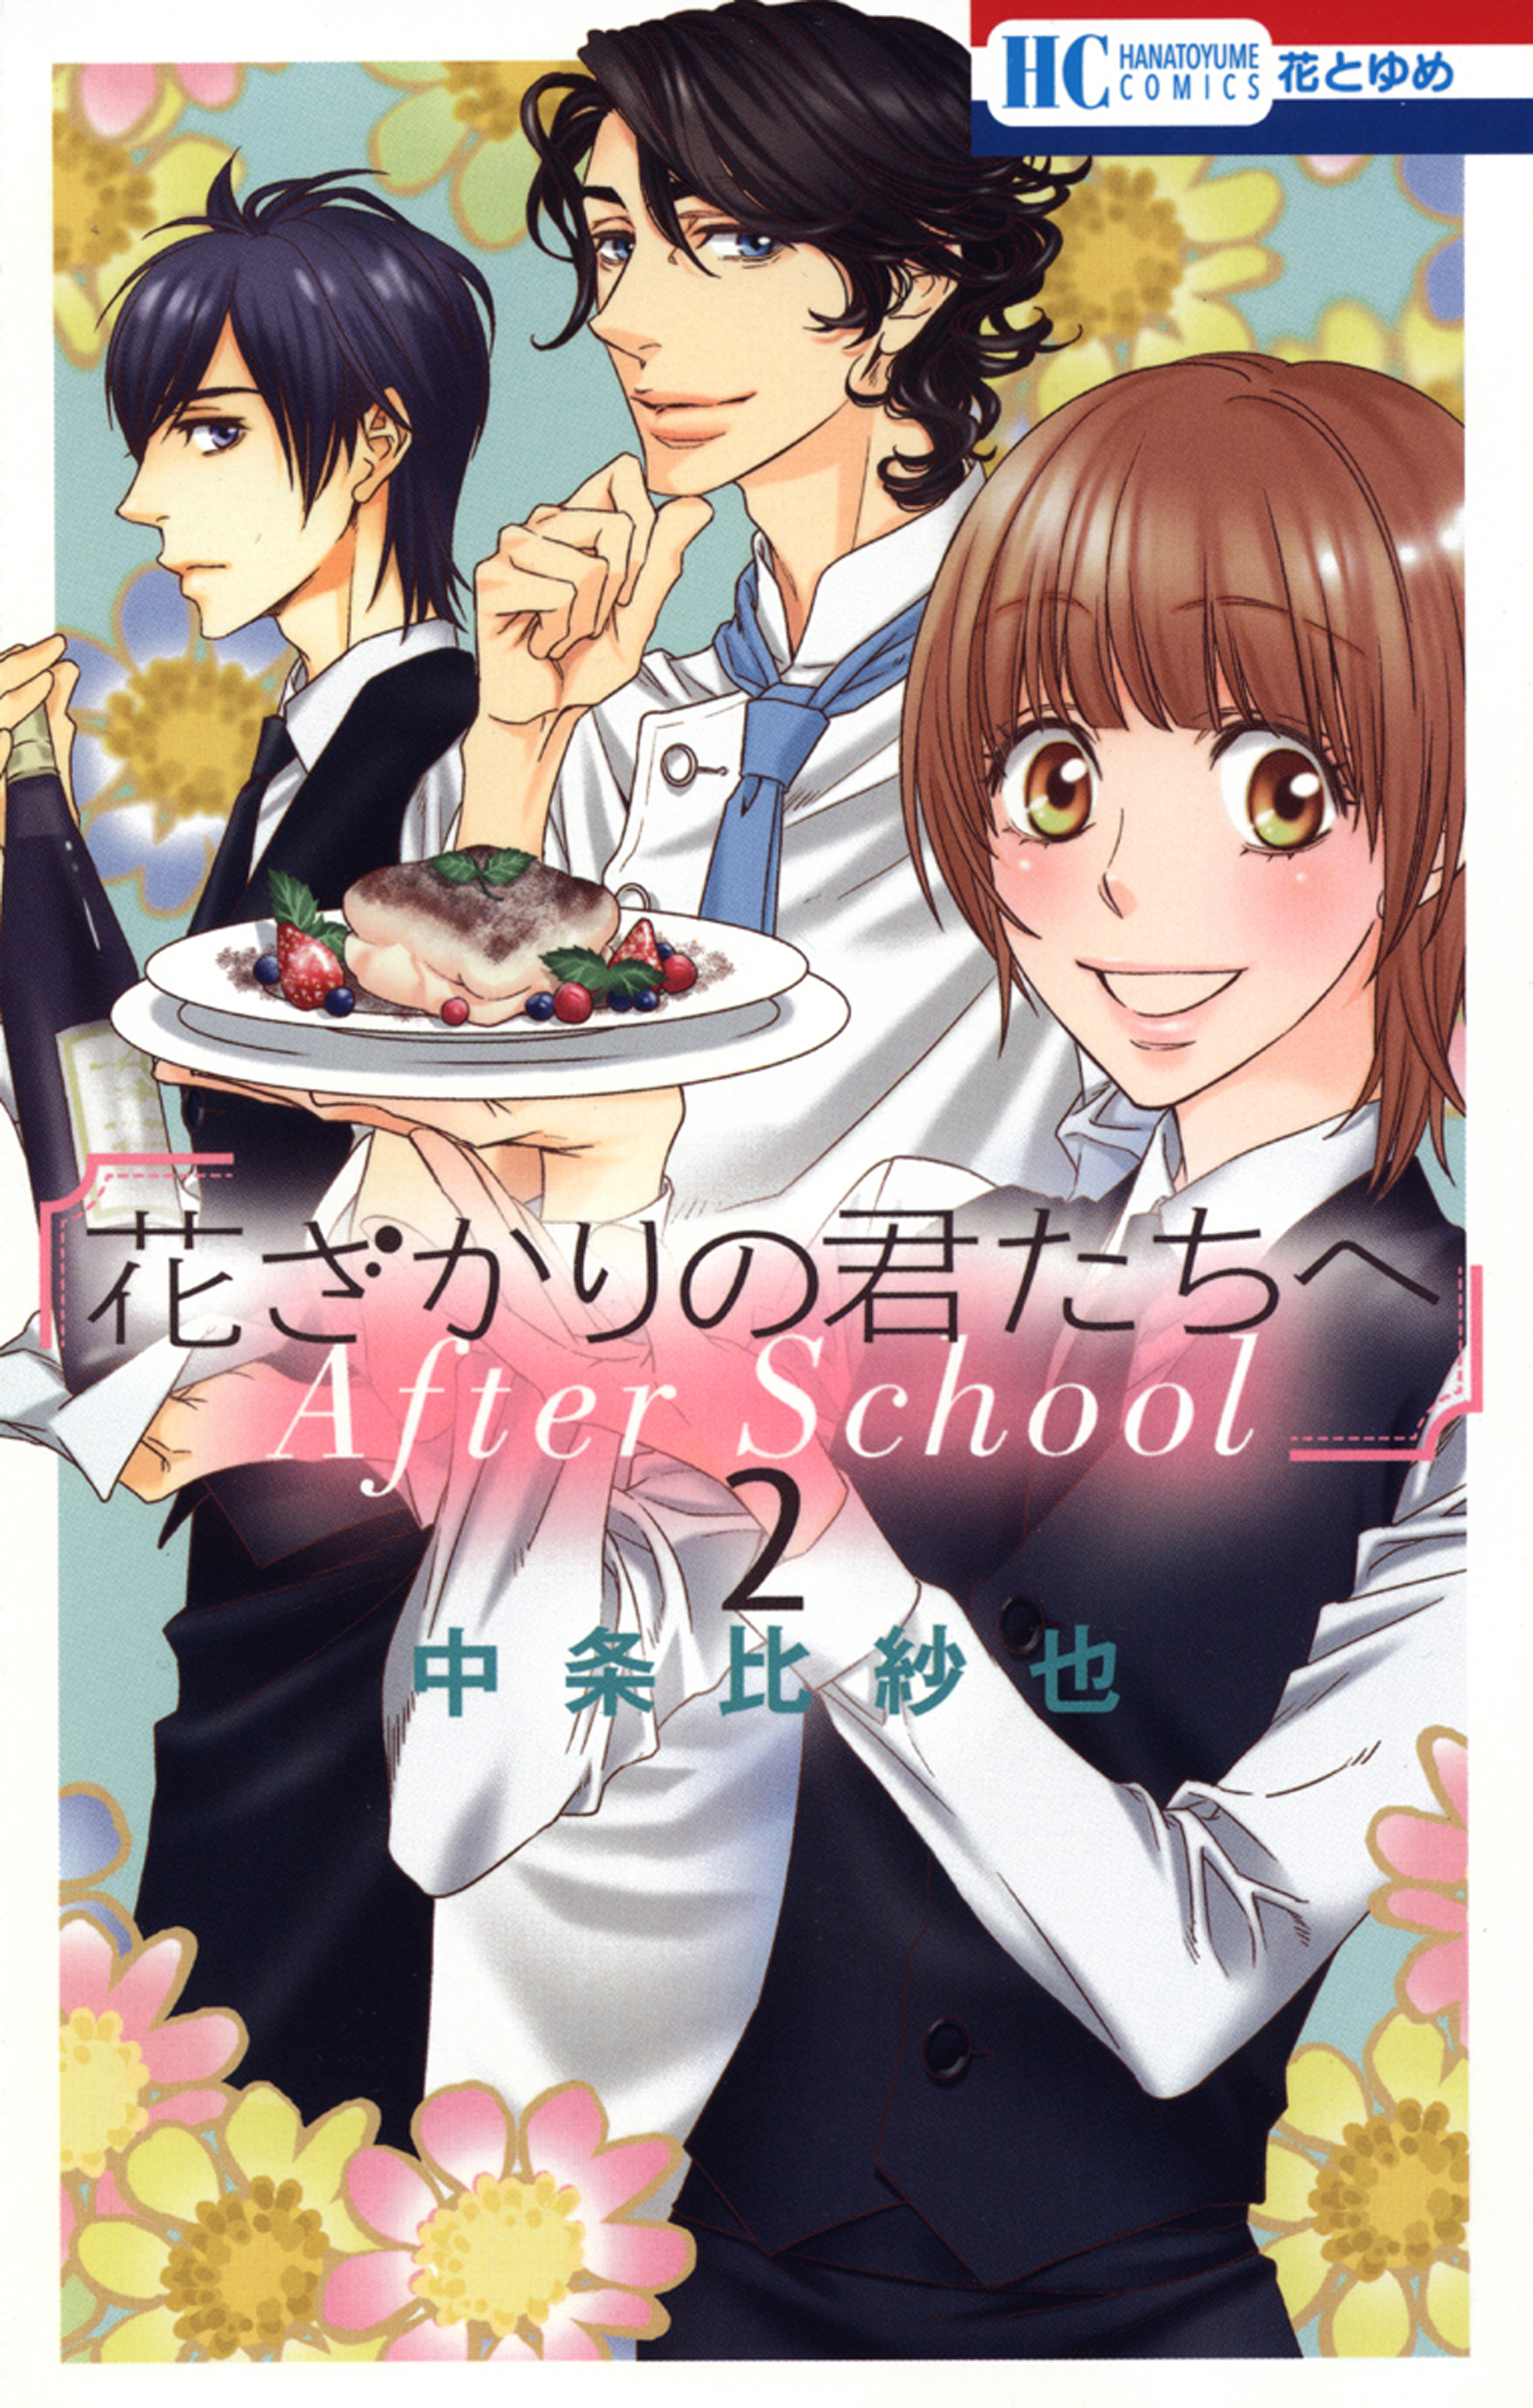 花ざかりの君たちへ After School(マンガ) - 電子書籍 | U-NEXT 初回 